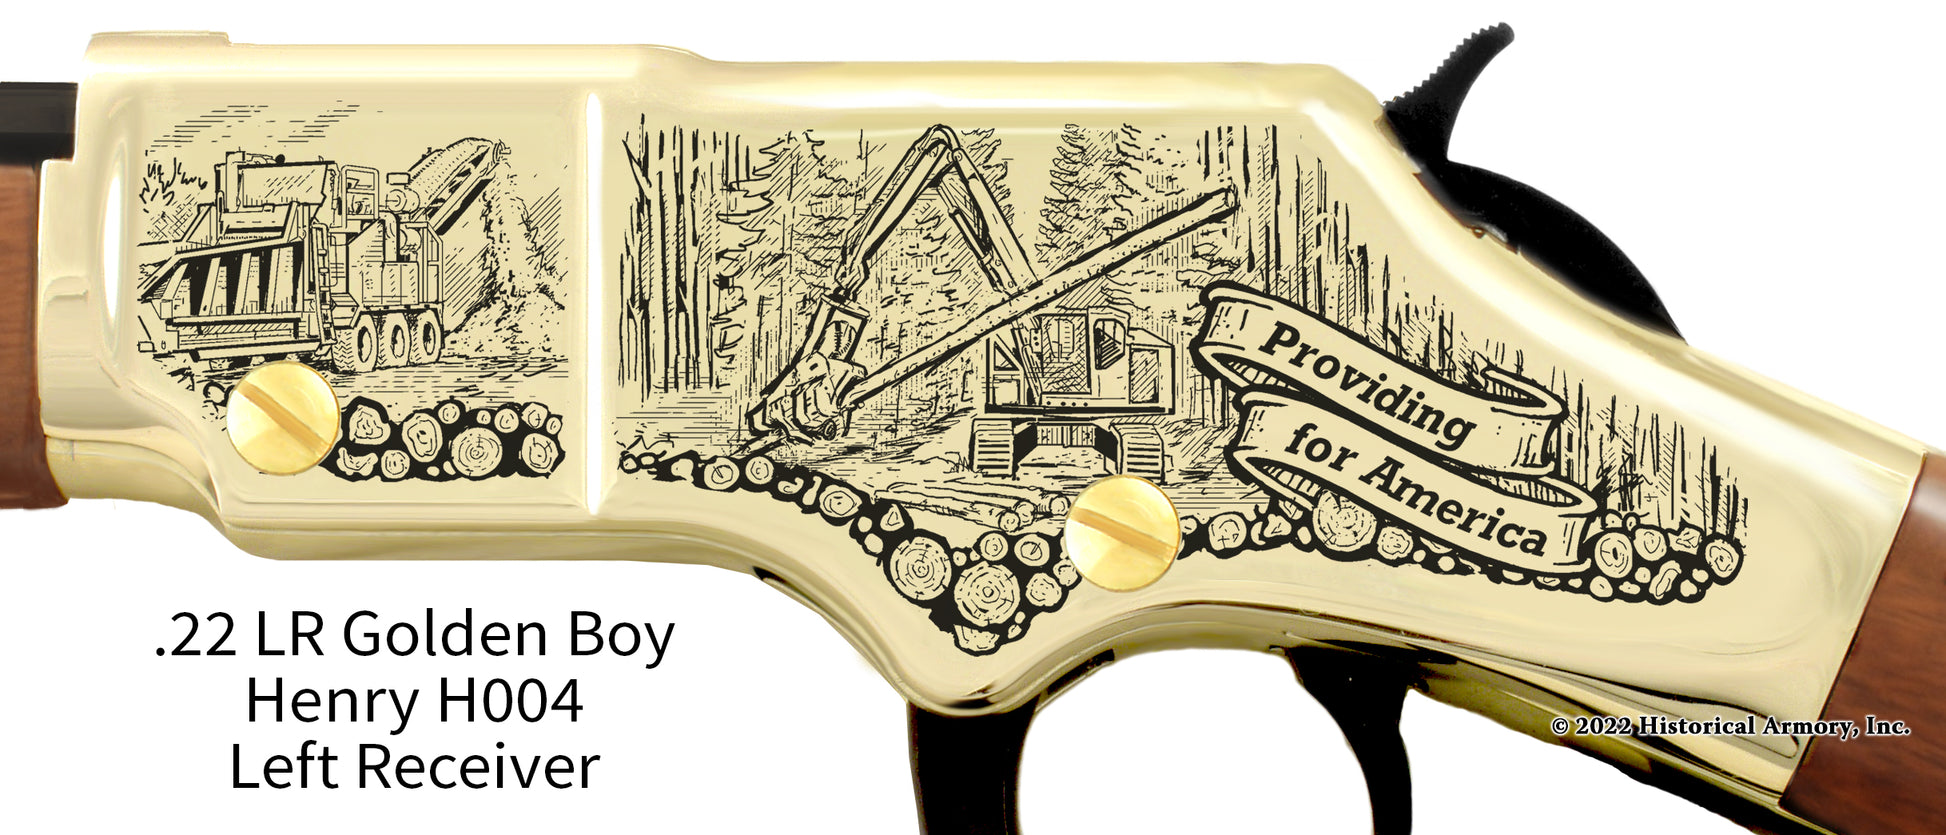 logger providing for America golden boy henry engraved rifle